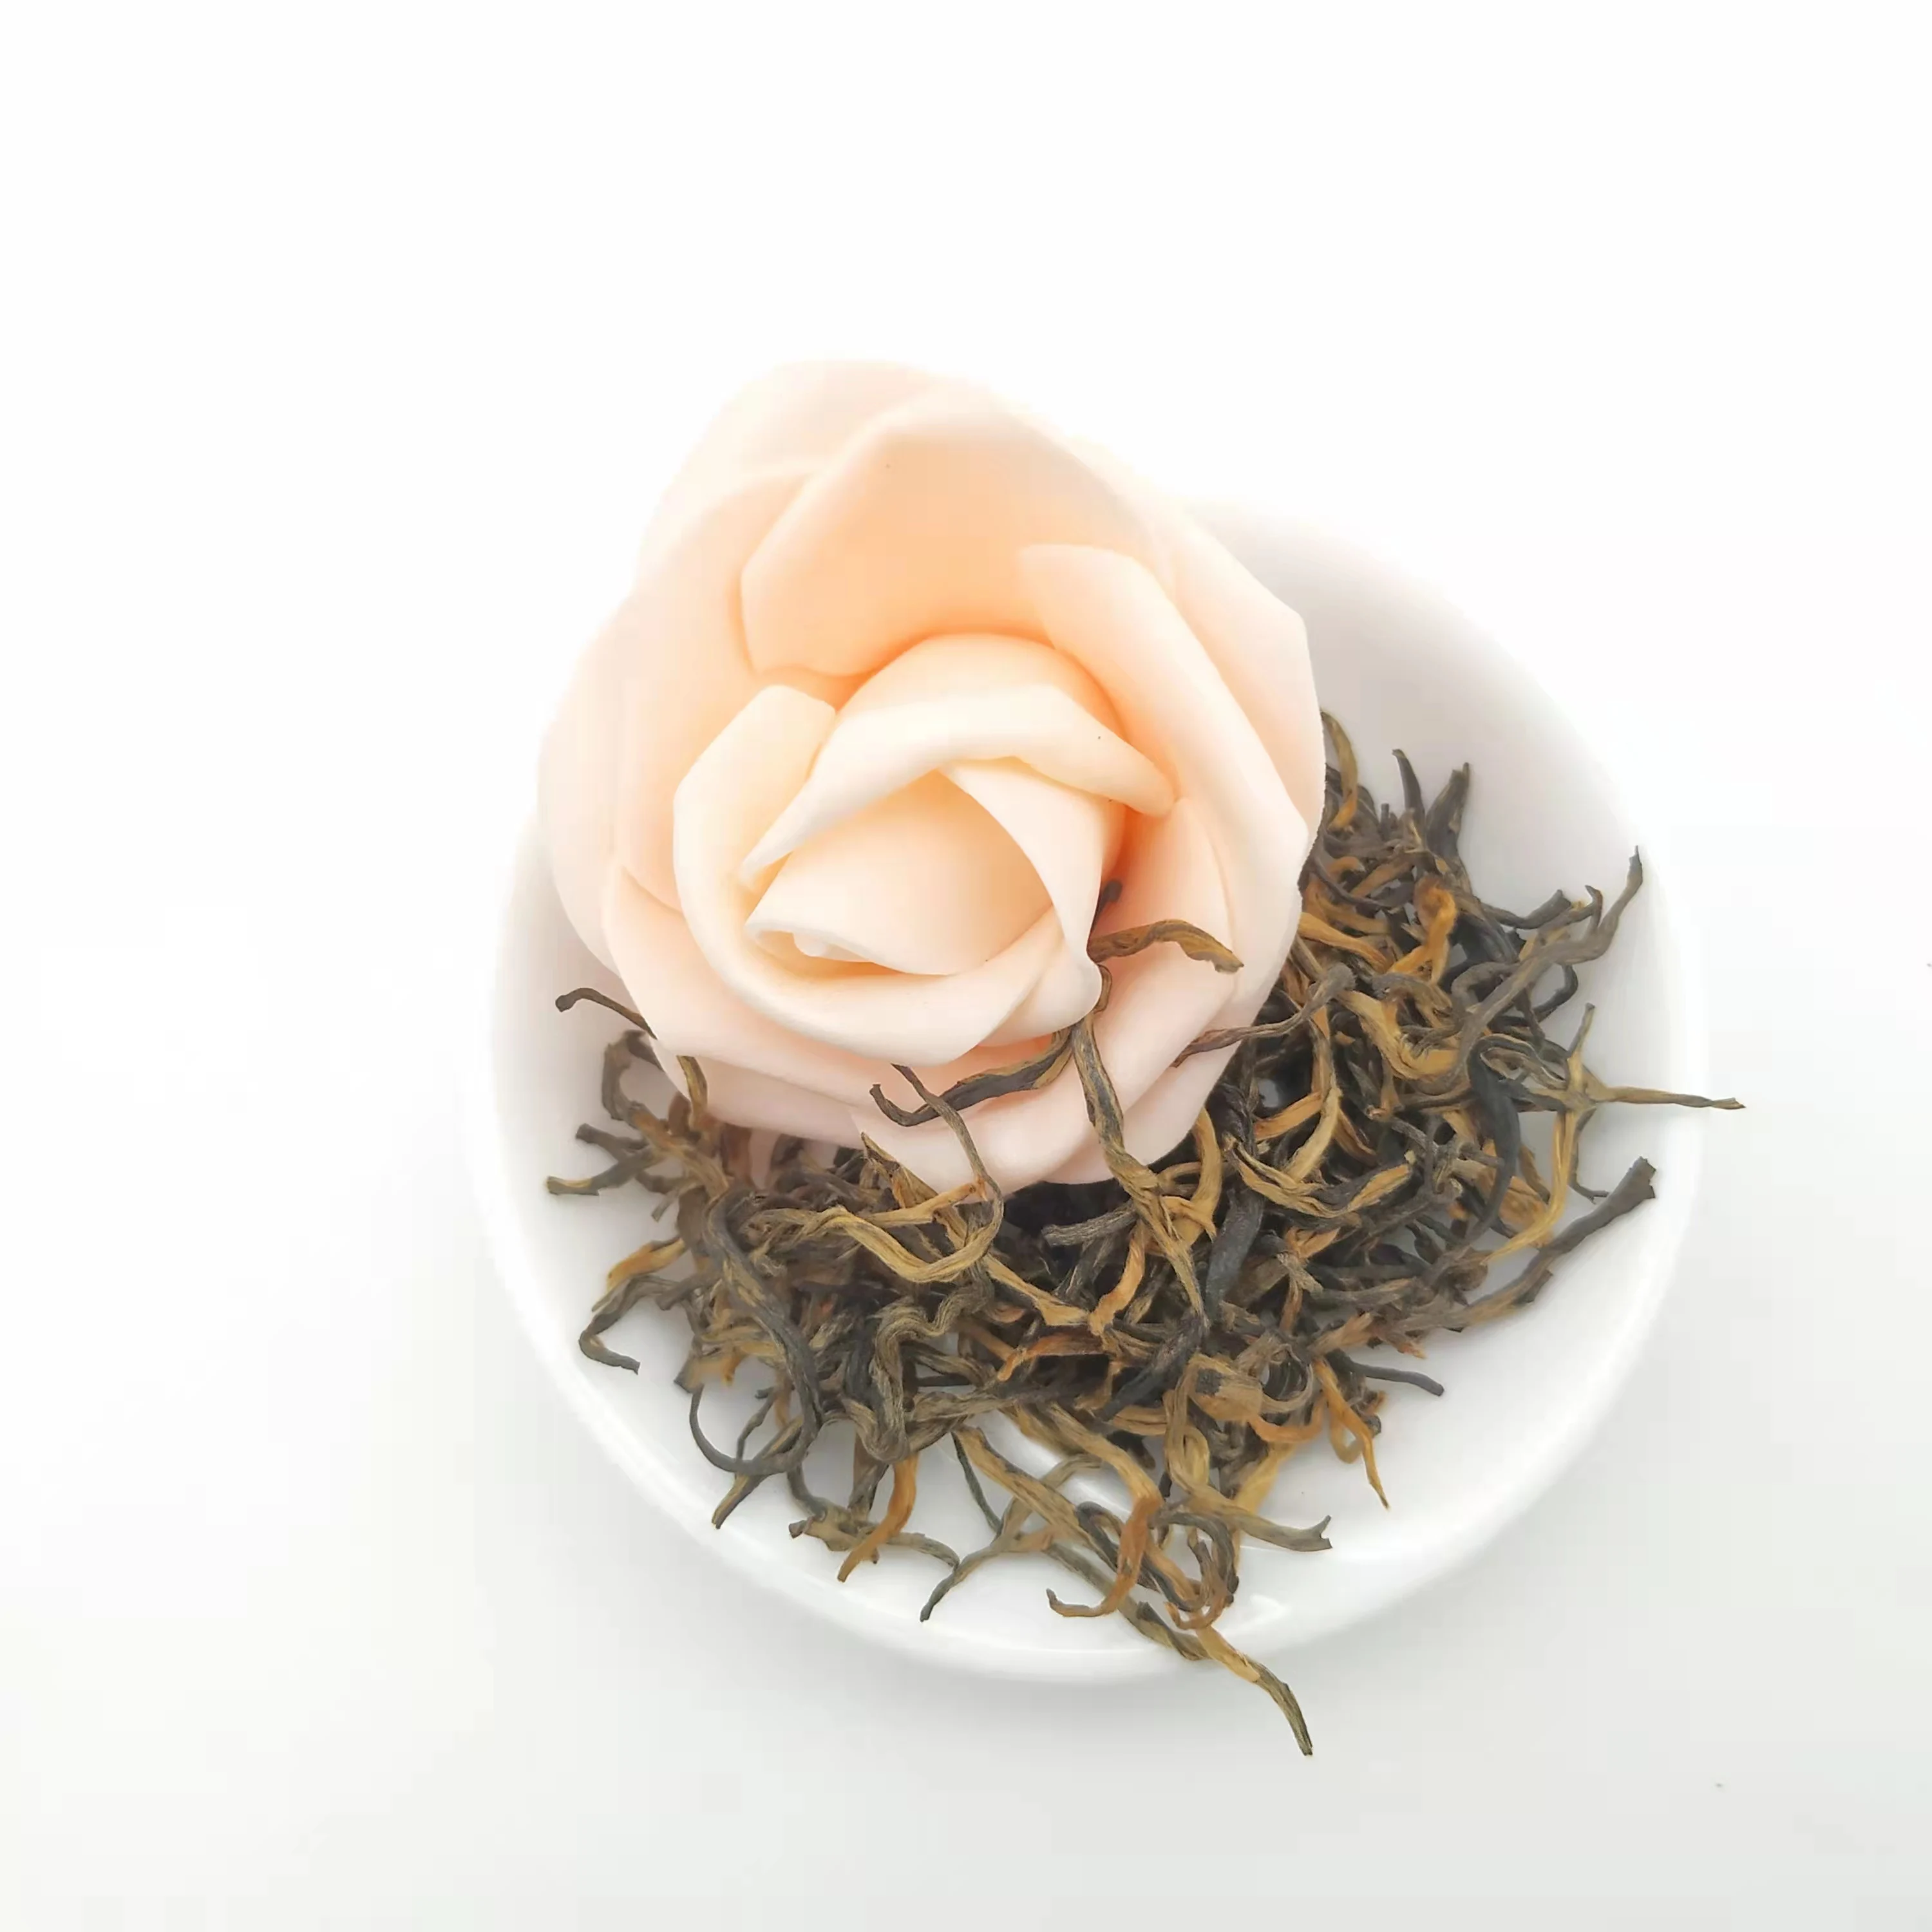 No-Additive  100% Natural Chinese Yunnan DianHong  Golden Tips  Tea  Premium DianHong  Golden Tips  Directly Supply